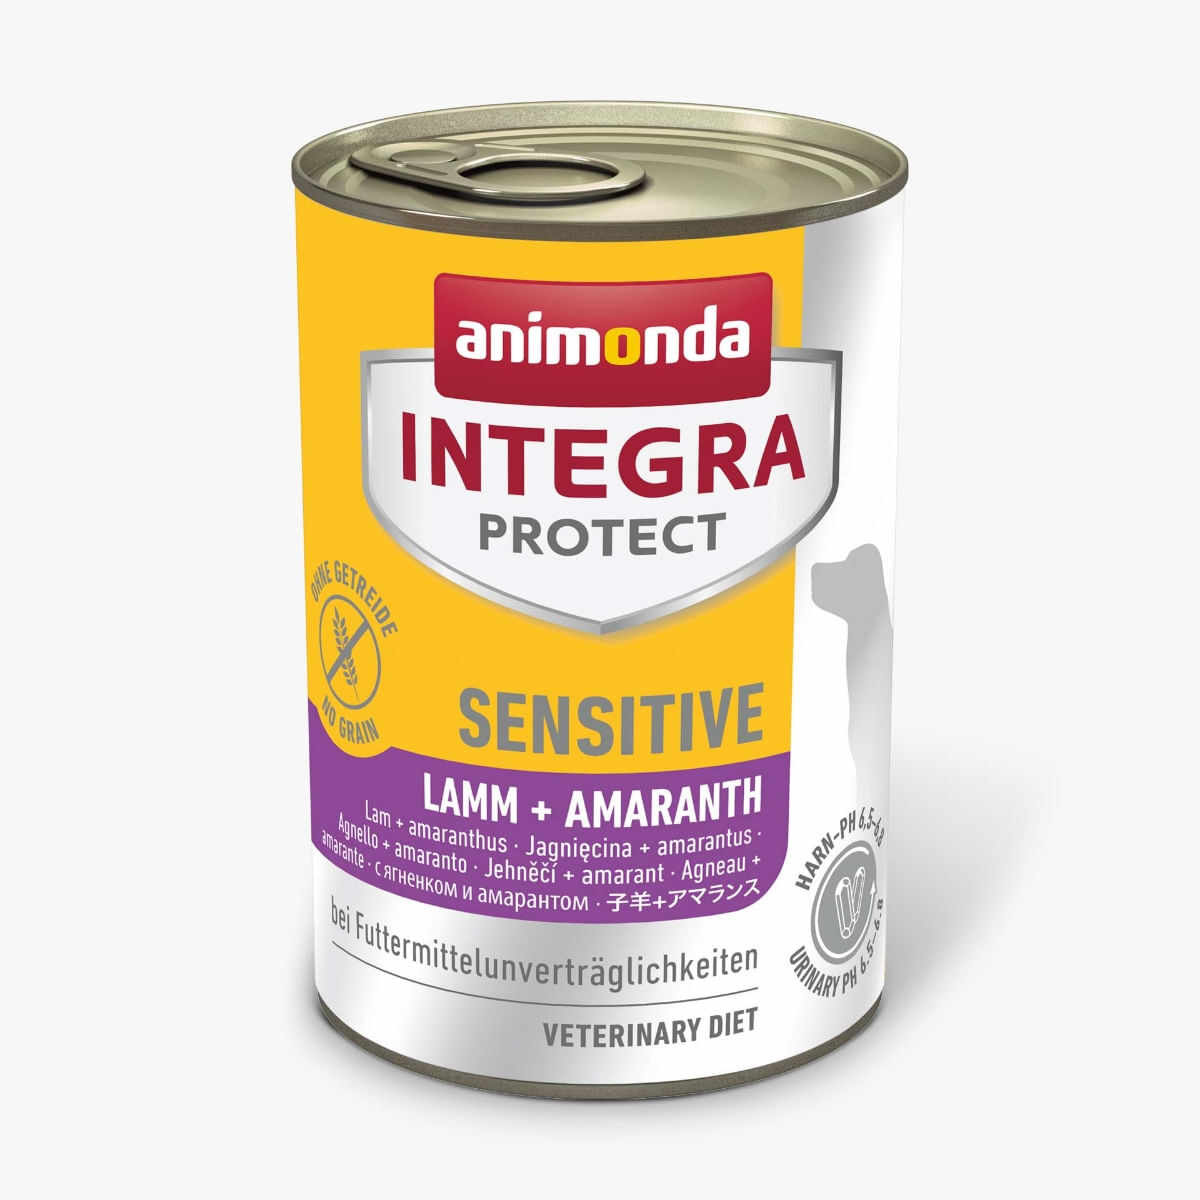 INTEGRA PROTECT Sensitive, XS-M, Miel, dietă veterinară, conservă hrană umedă conținut redus cereale câini, alergii, sistem digestiv, (în aspic), 400g